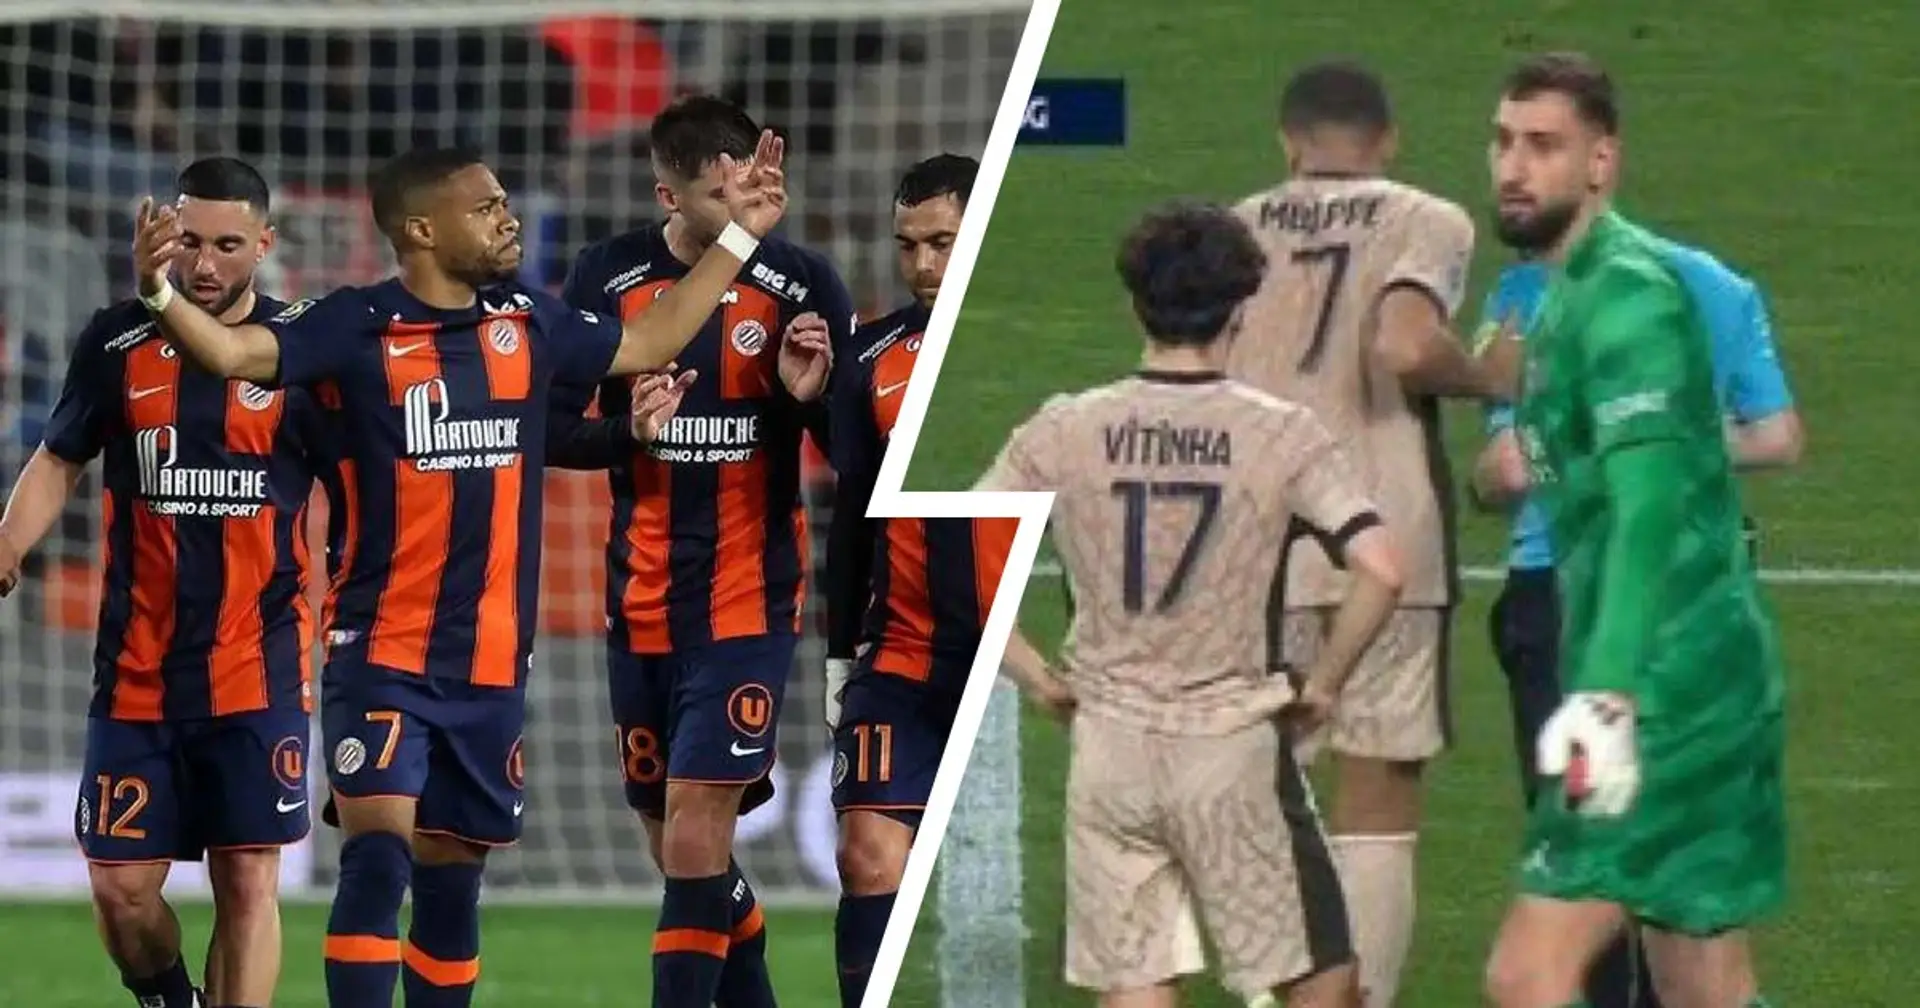 "Jamais de la vie y a pénalty", les fans du PSG crient au scandale sur la faute donnée par l'arbitre à Montpellier